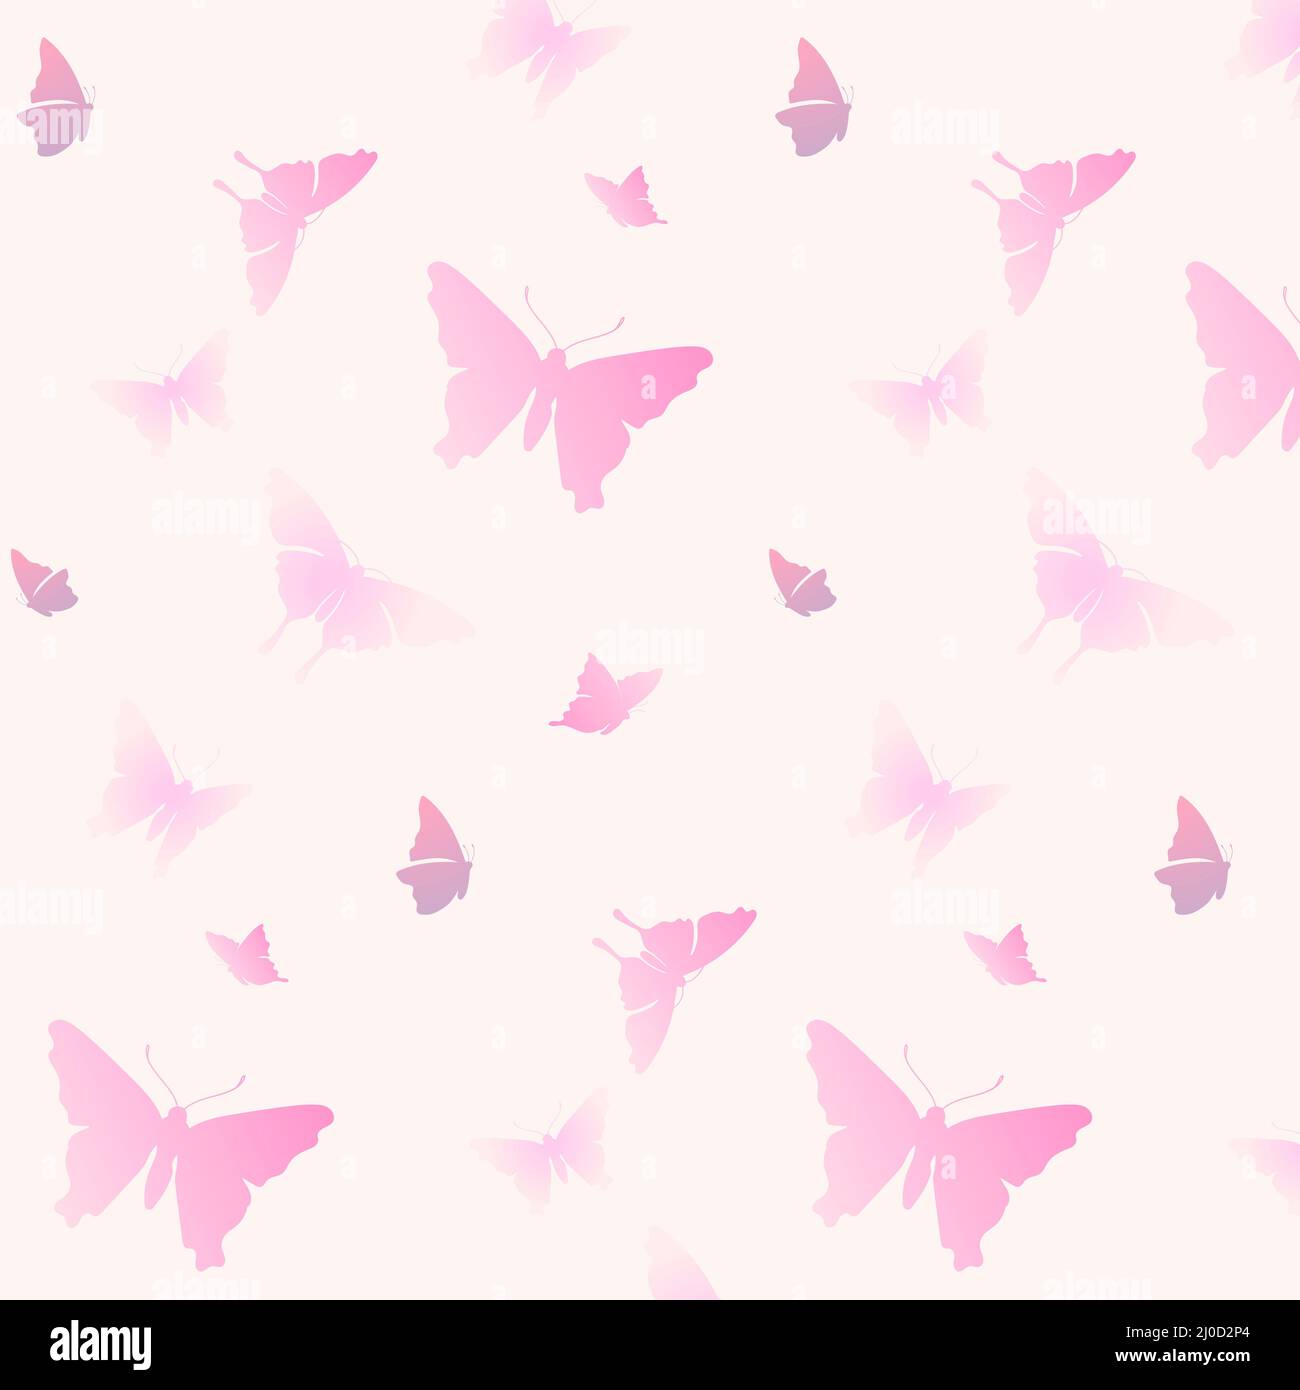 Họa tiết bướm đẹp mắt, nền hồng pastel, ảnh nền bướm hồng: Những chiếc bướm trên nền hồng pastel trông thật tuyệt vời và đẹp mắt. Họa tiết bướm là một trong những món đồ trang trí phù hợp cho người yêu thích thiết kế nữ tính và cũng là một lựa chọn hoàn hảo cho việc làm nền ảnh cho trang trí website hay những bức ảnh tuyệt đẹp của bạn.